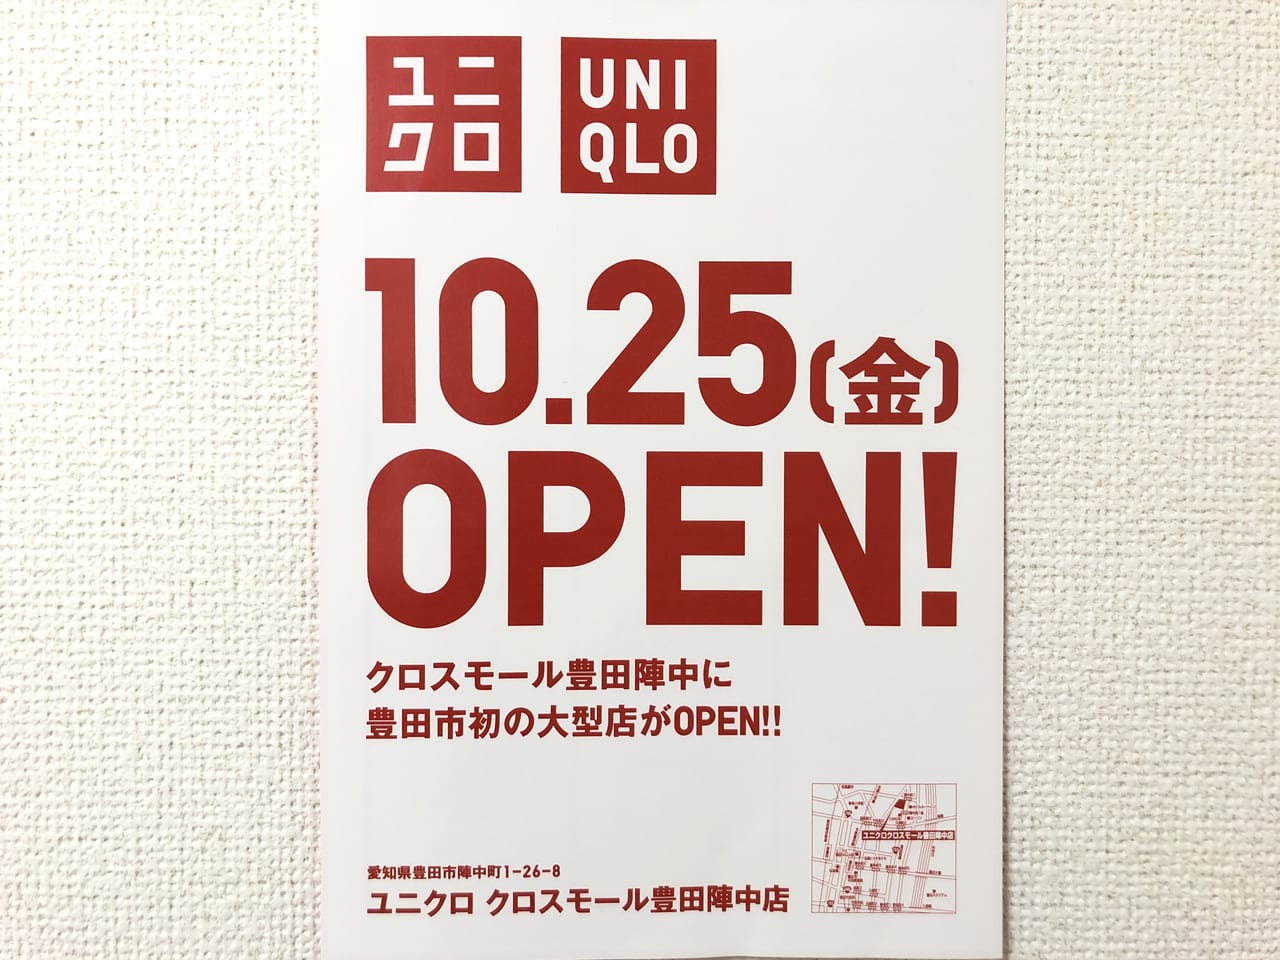 クロスモール豊田陣中のUNIQLOオープン日